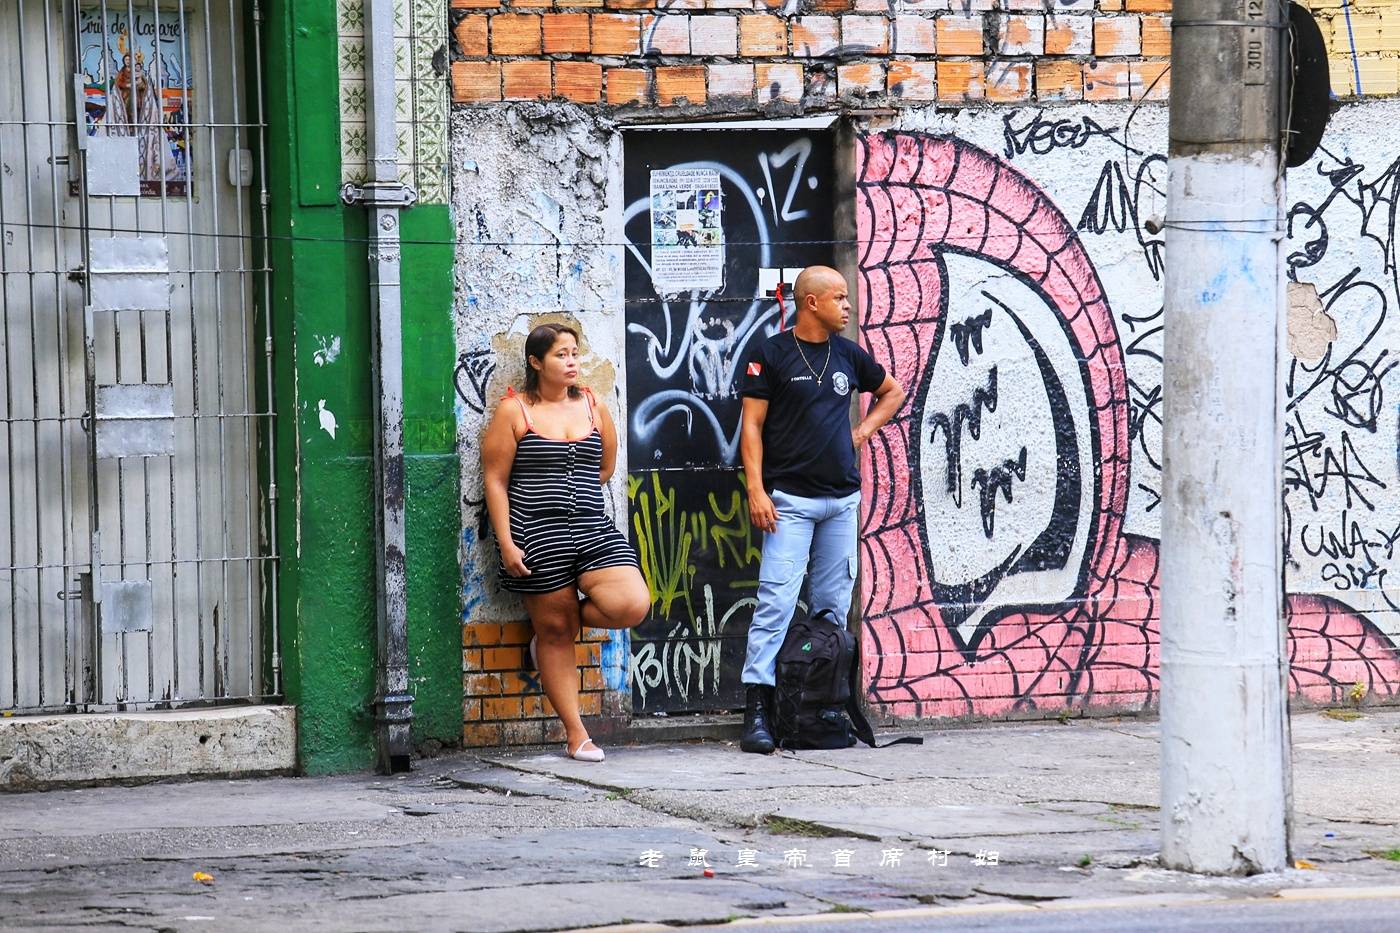 比里约更恐怖却鲜有人知，探访赤道最大城市贫民窟遇“甜蜜绑架”